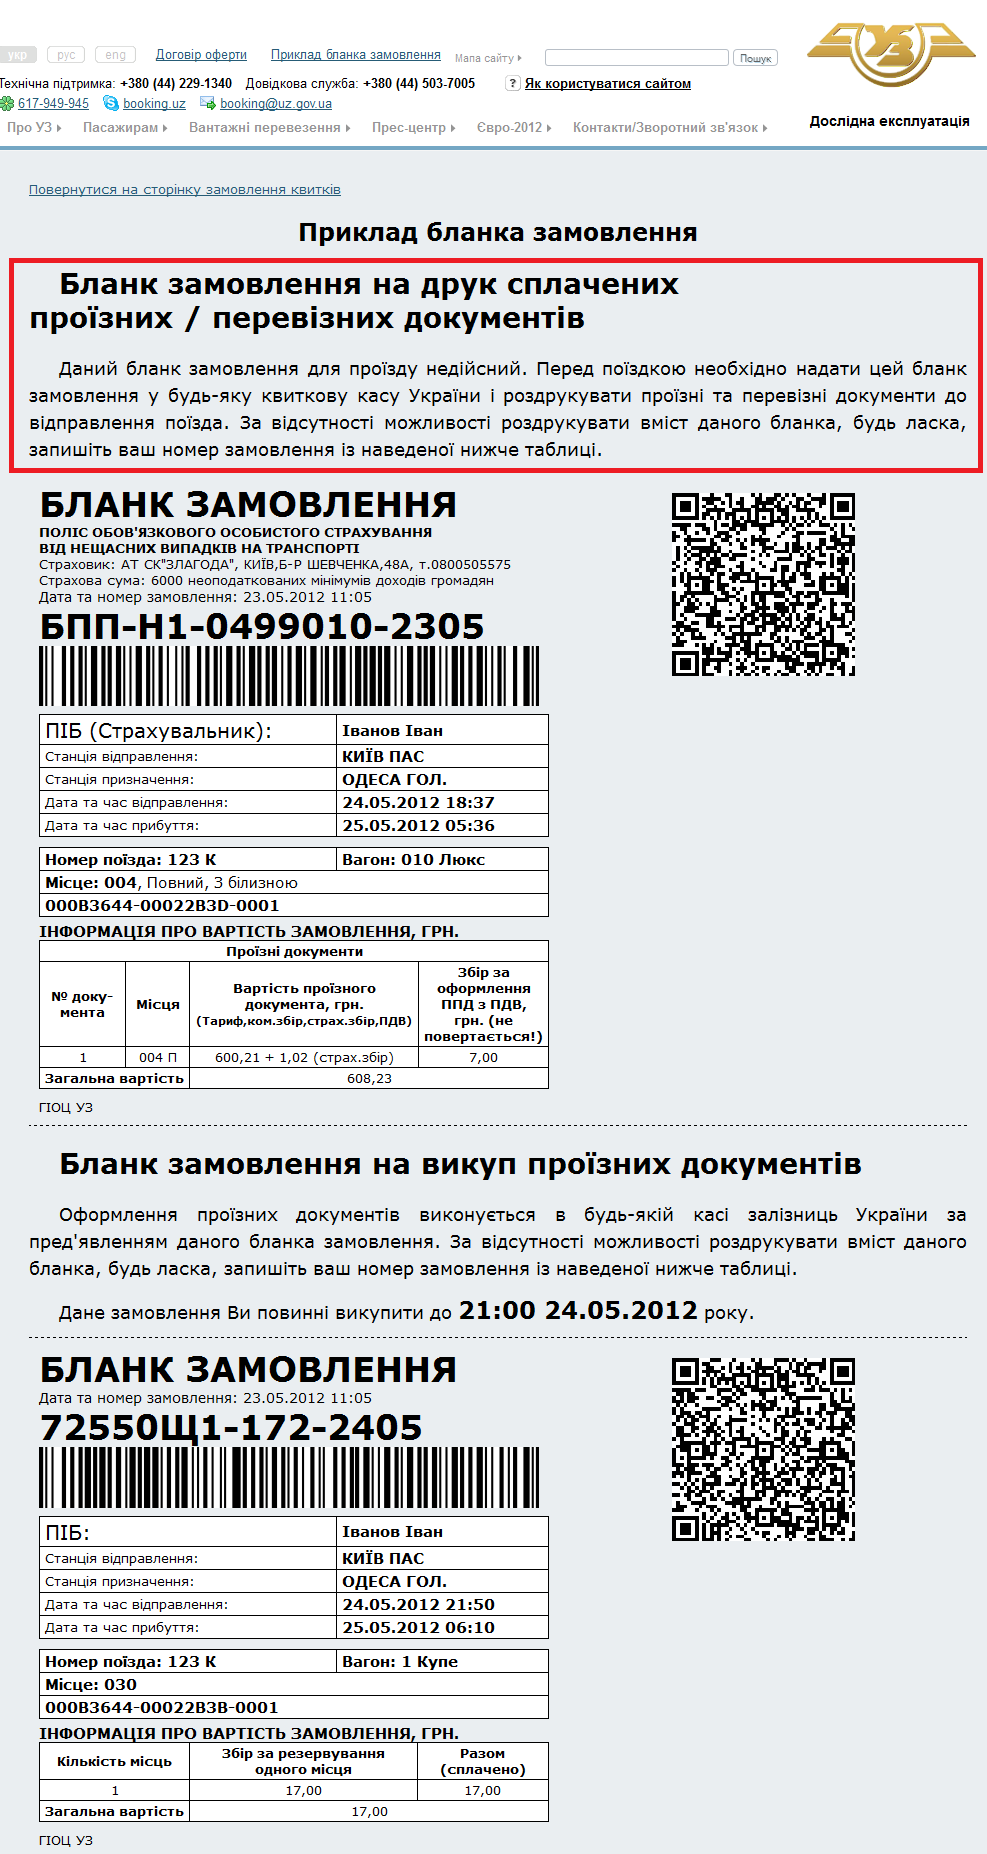 http://booking.uz.gov.ua/result/example/